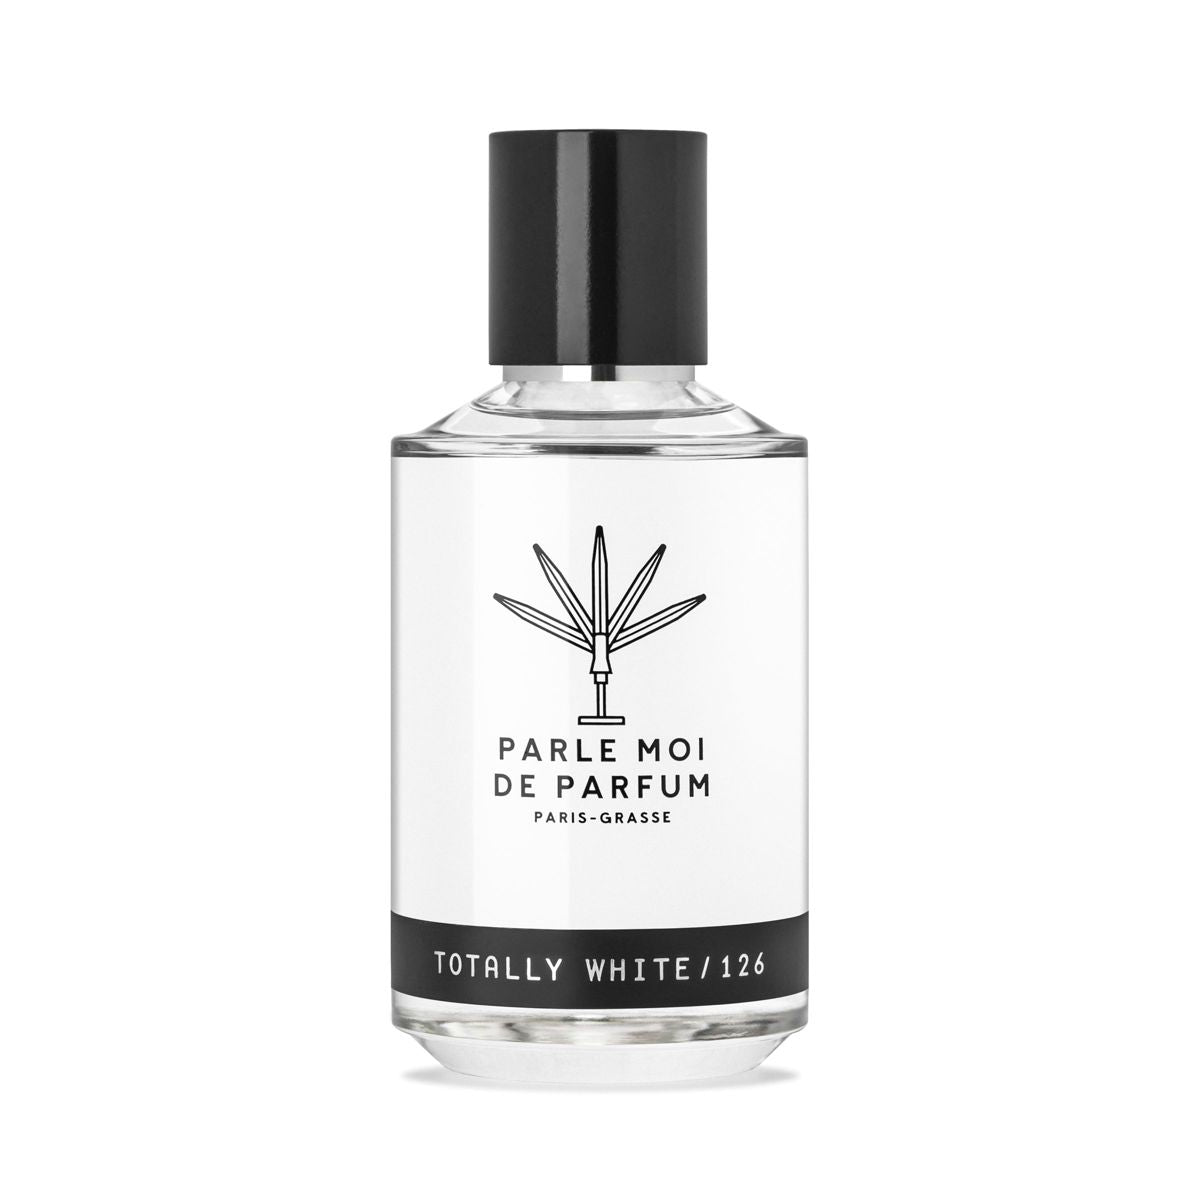 Parle Moi de Parfum - Totally White / 126 - Eau de Parfum